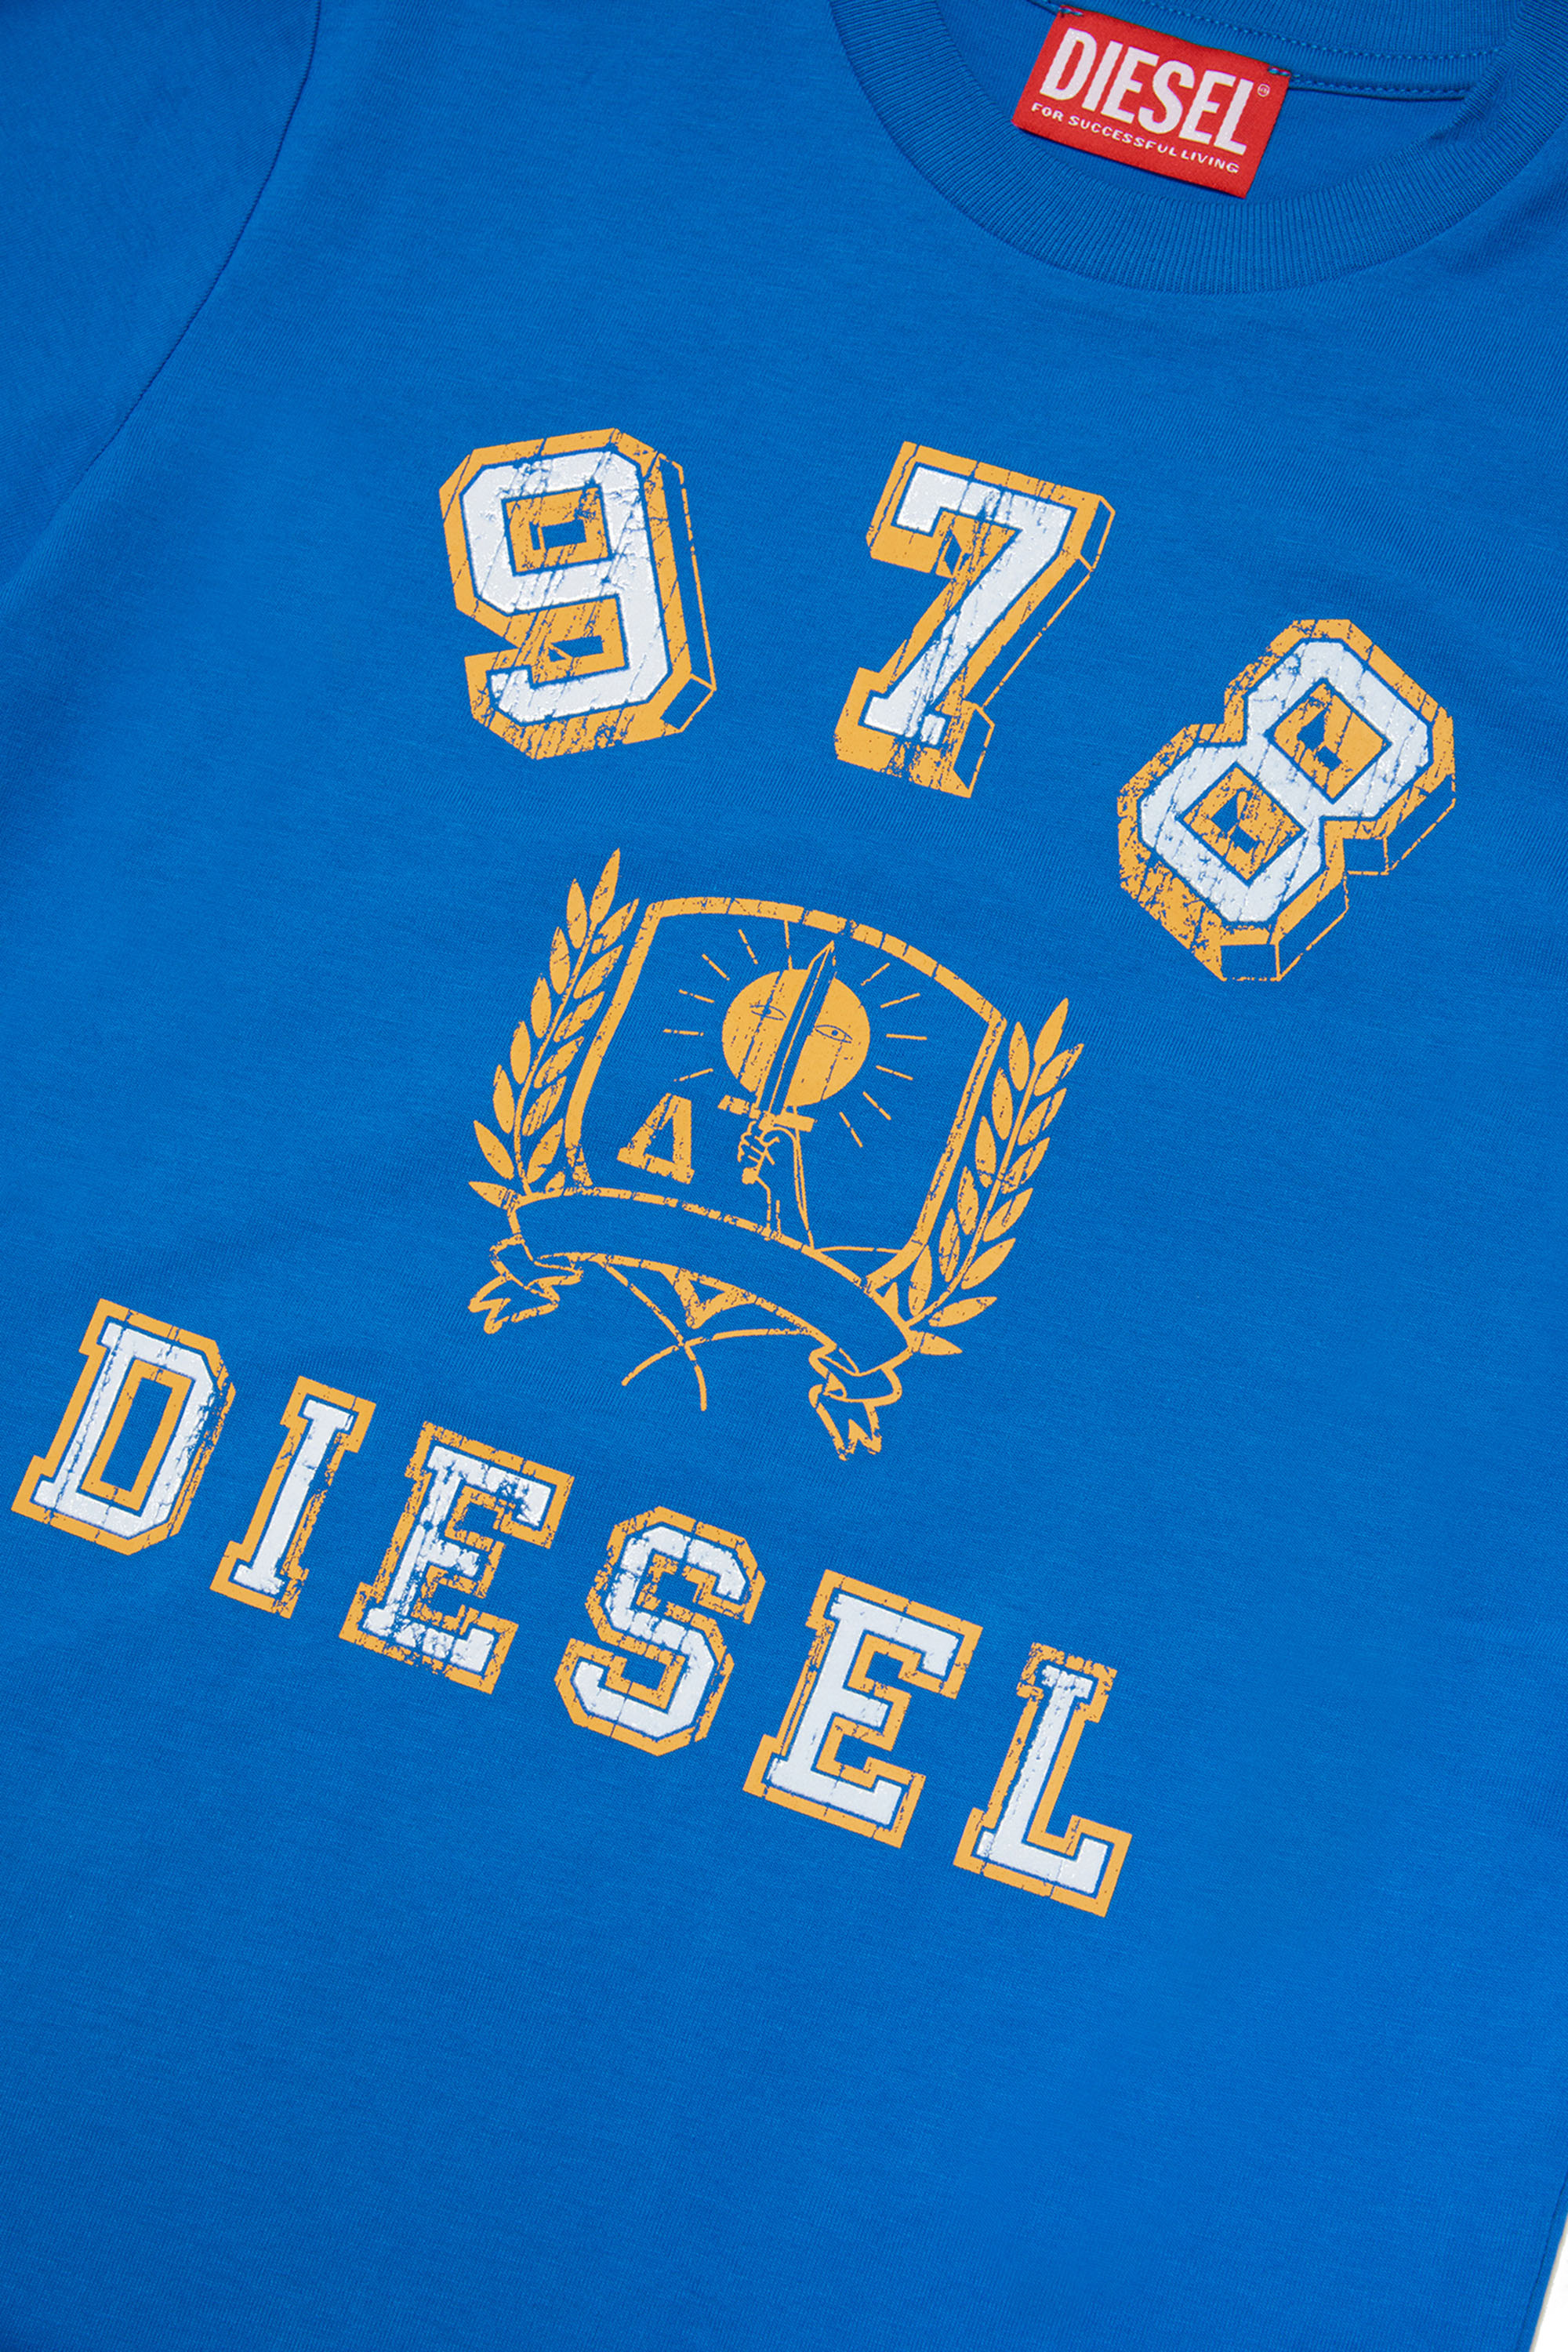 Diesel - TDIEGORE11, Blau - Image 3